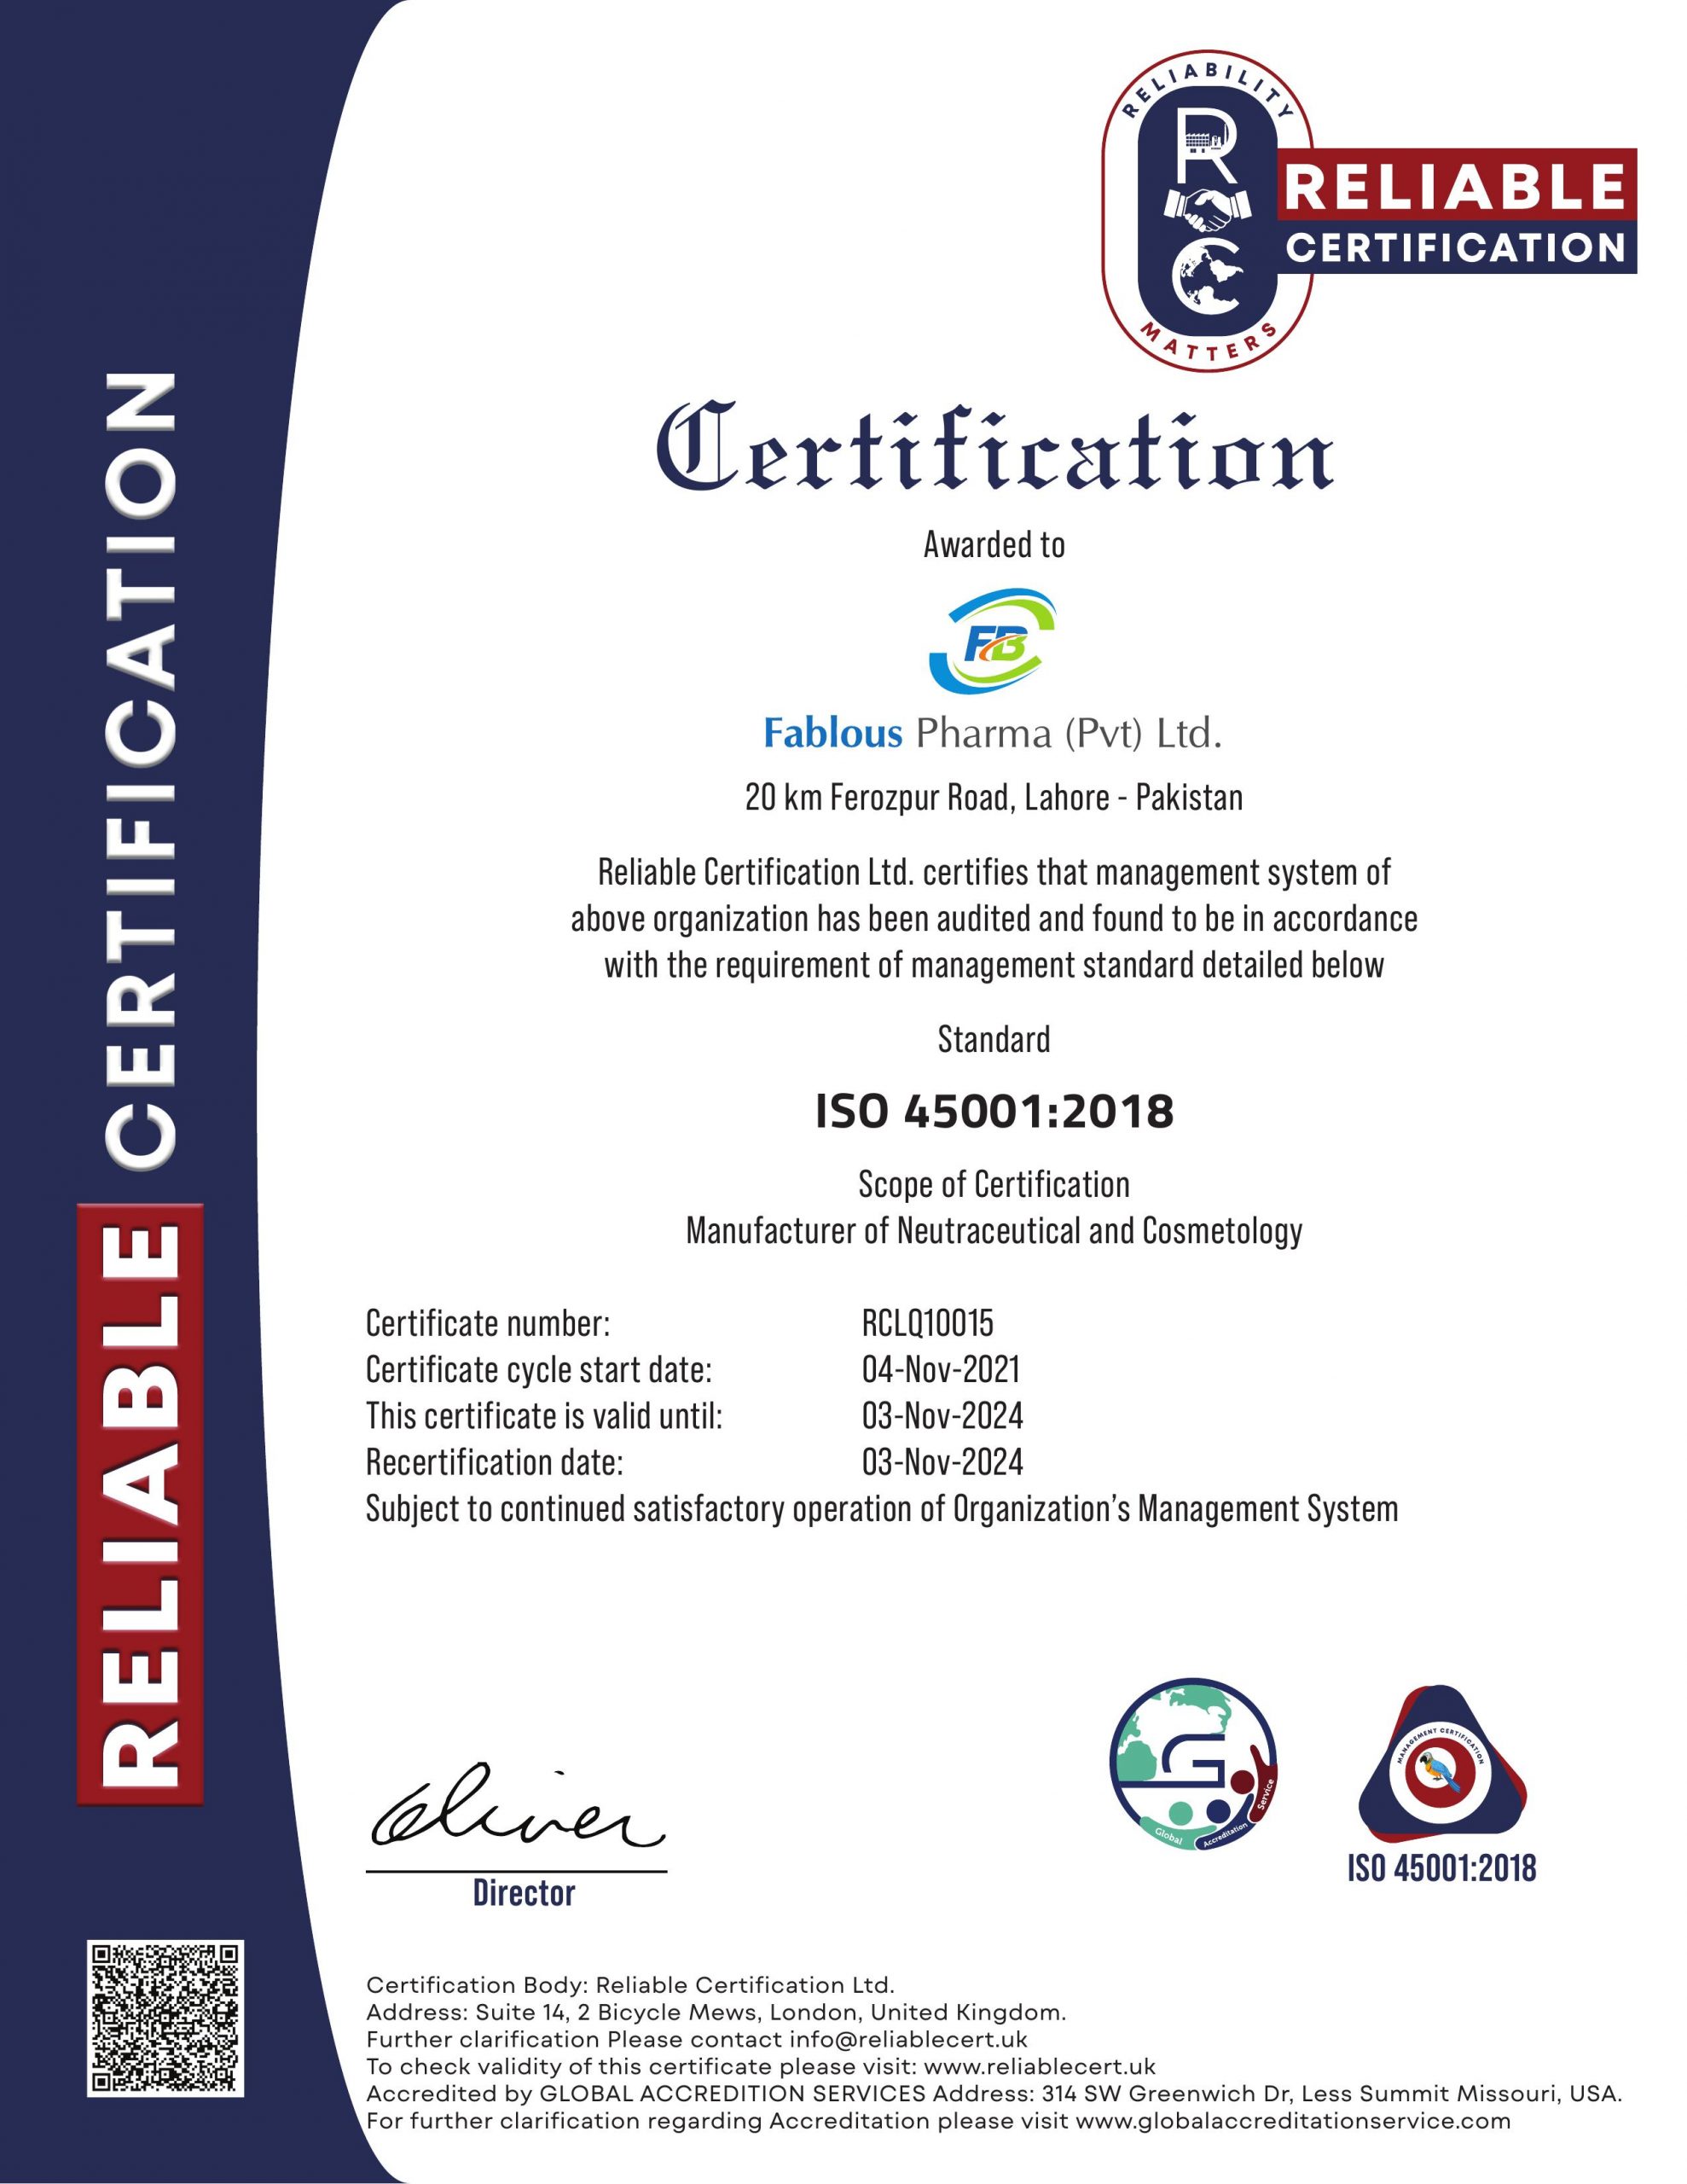 FABLOUS PHARMA PVT LTD ISO 45001 2018 1 scaled